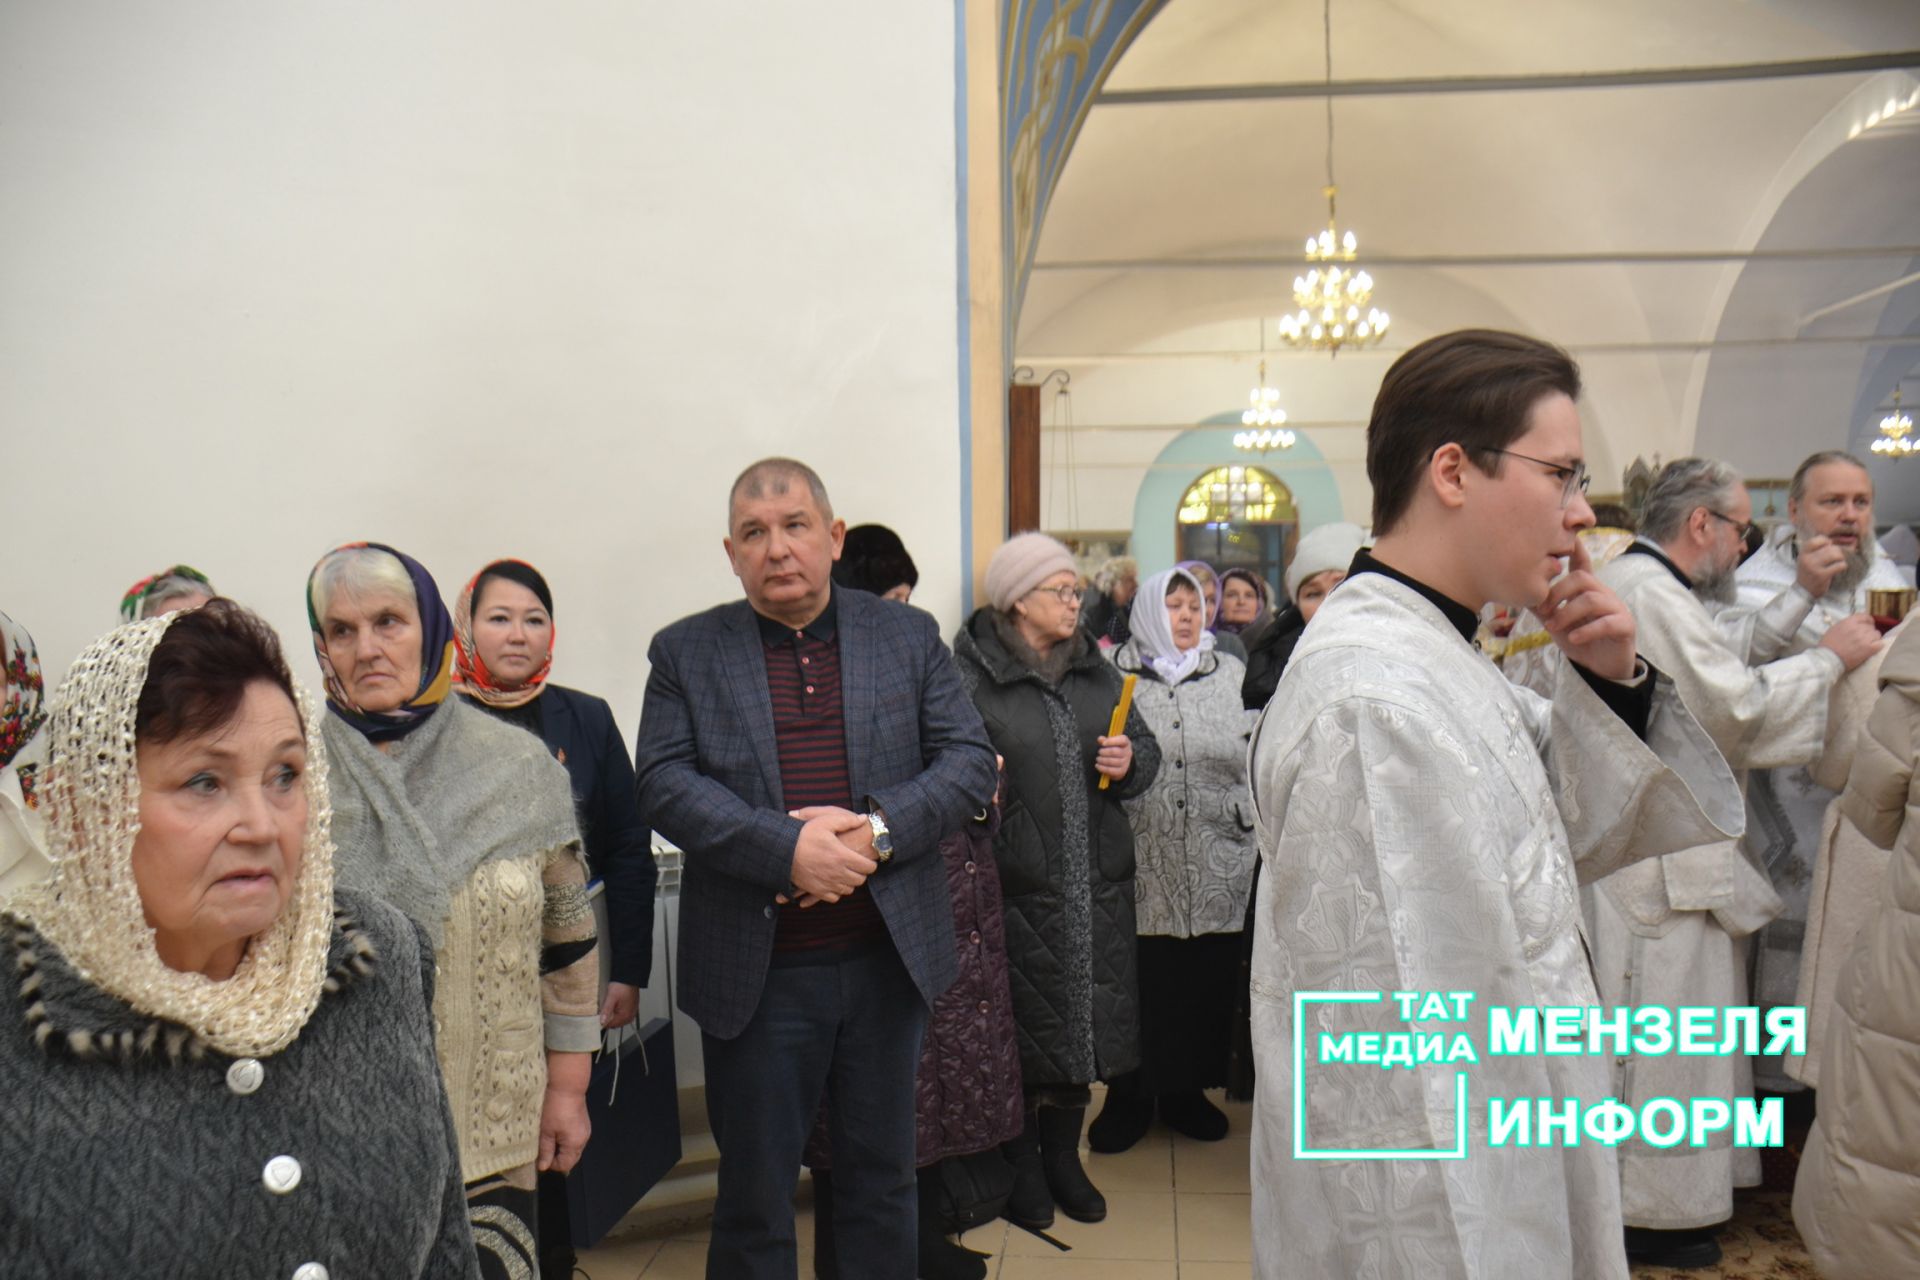 Митрополит Казанский и Татарстанский Кирилл возглавил праздничное богослужение в Никольском кафедральном Соборе, пообщался с прихожанами